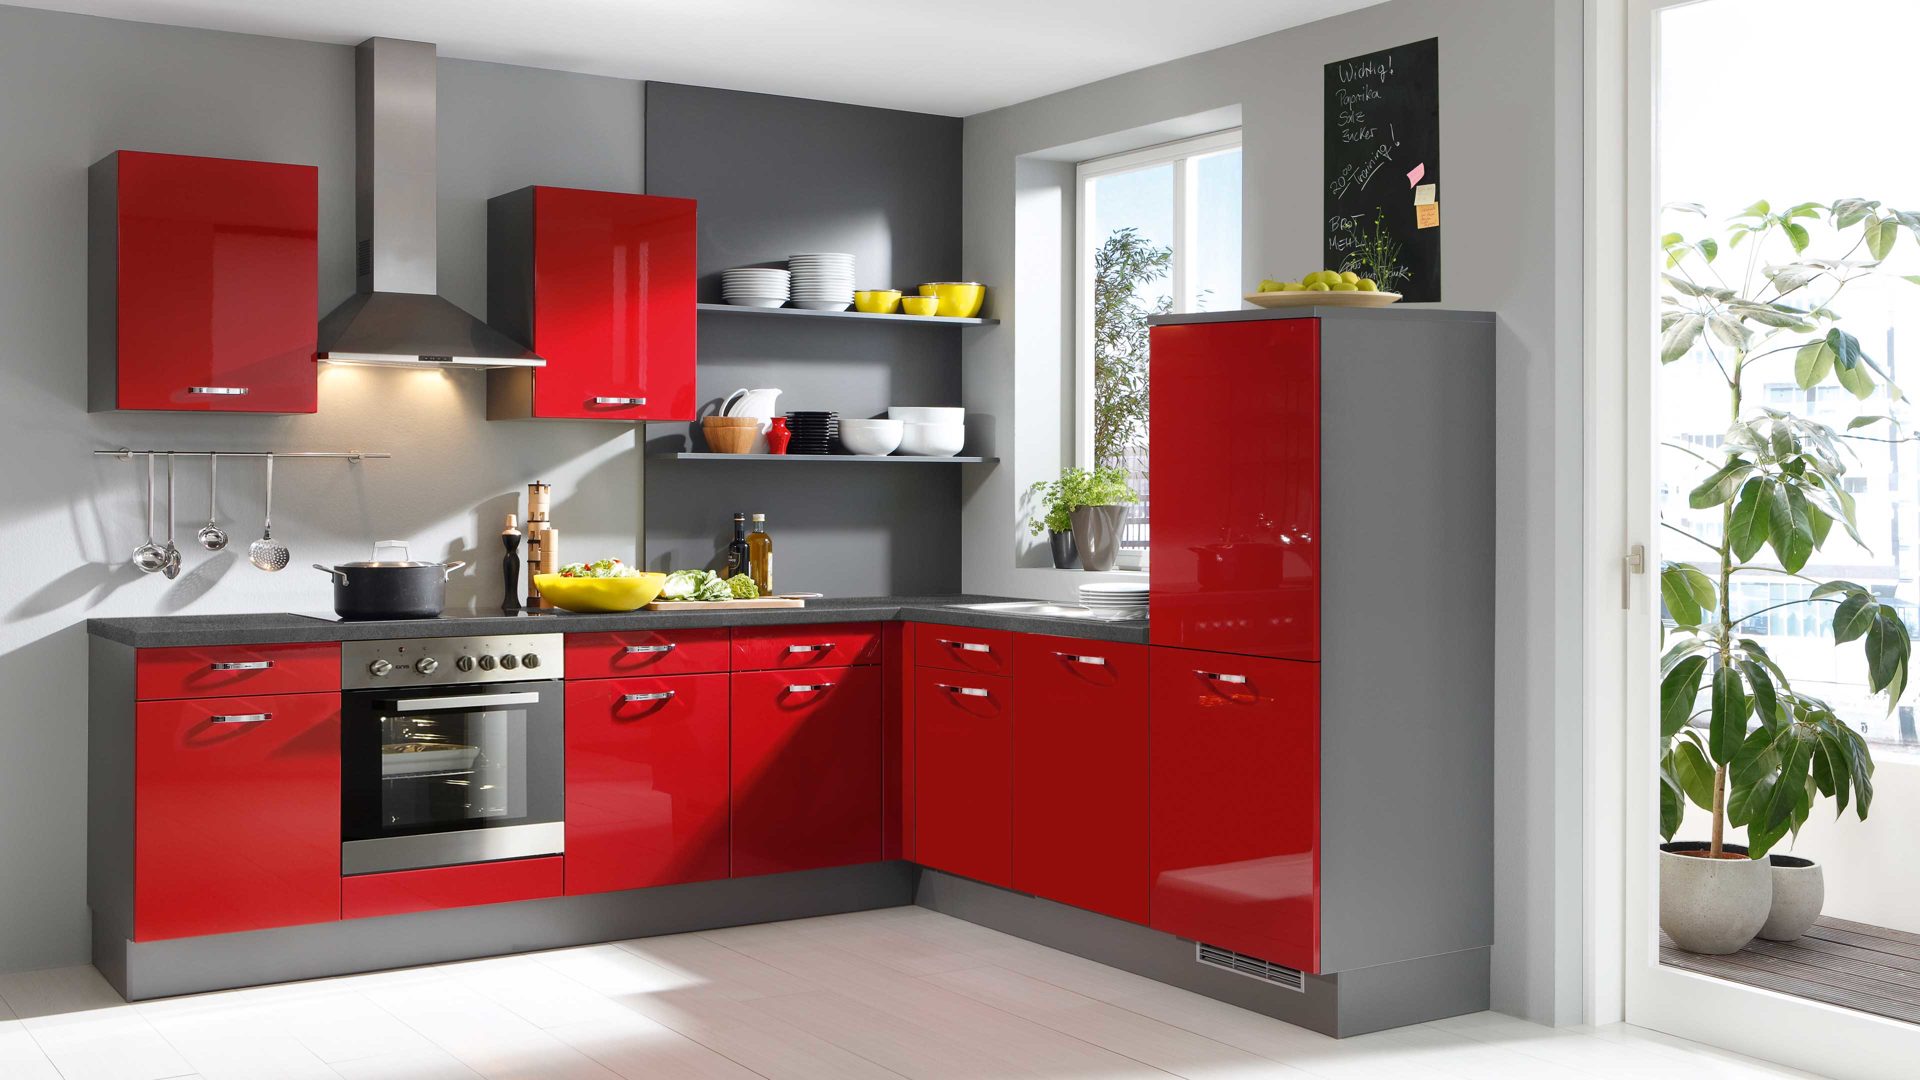 Einbauküche Pino küchen aus Holz in Rot pino Einbauküche inklusive Einbaugeräte Rot & Edelstahl - Stellfläche ca. 275 x 235 cm